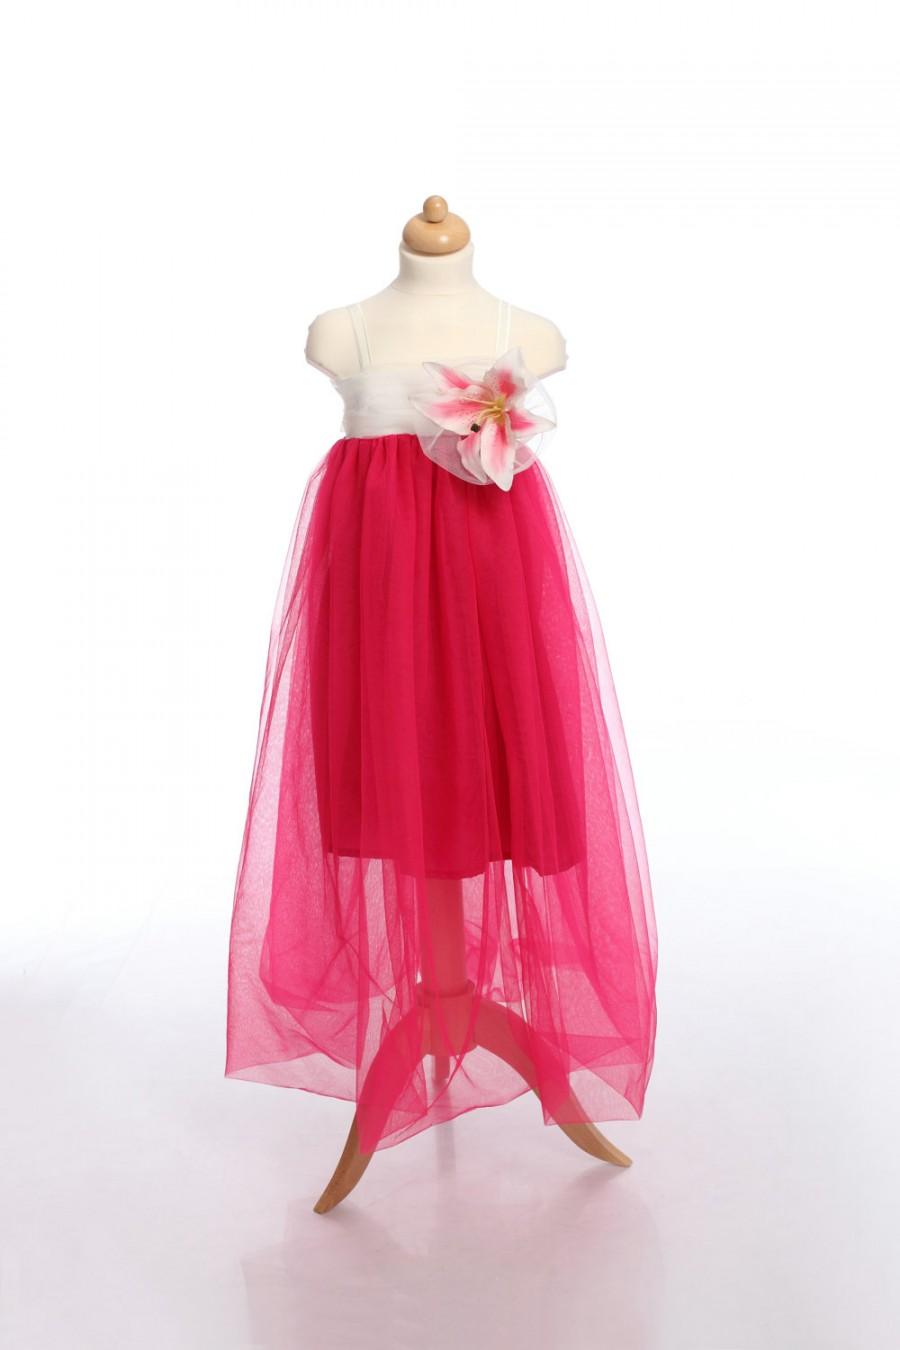 زفاف - Fuchsia Kid Dress, Flower Girl Dress, Tulle Toddler Dress, Girl Dress, Girl Gown, Birthday Dress, Fairy dress